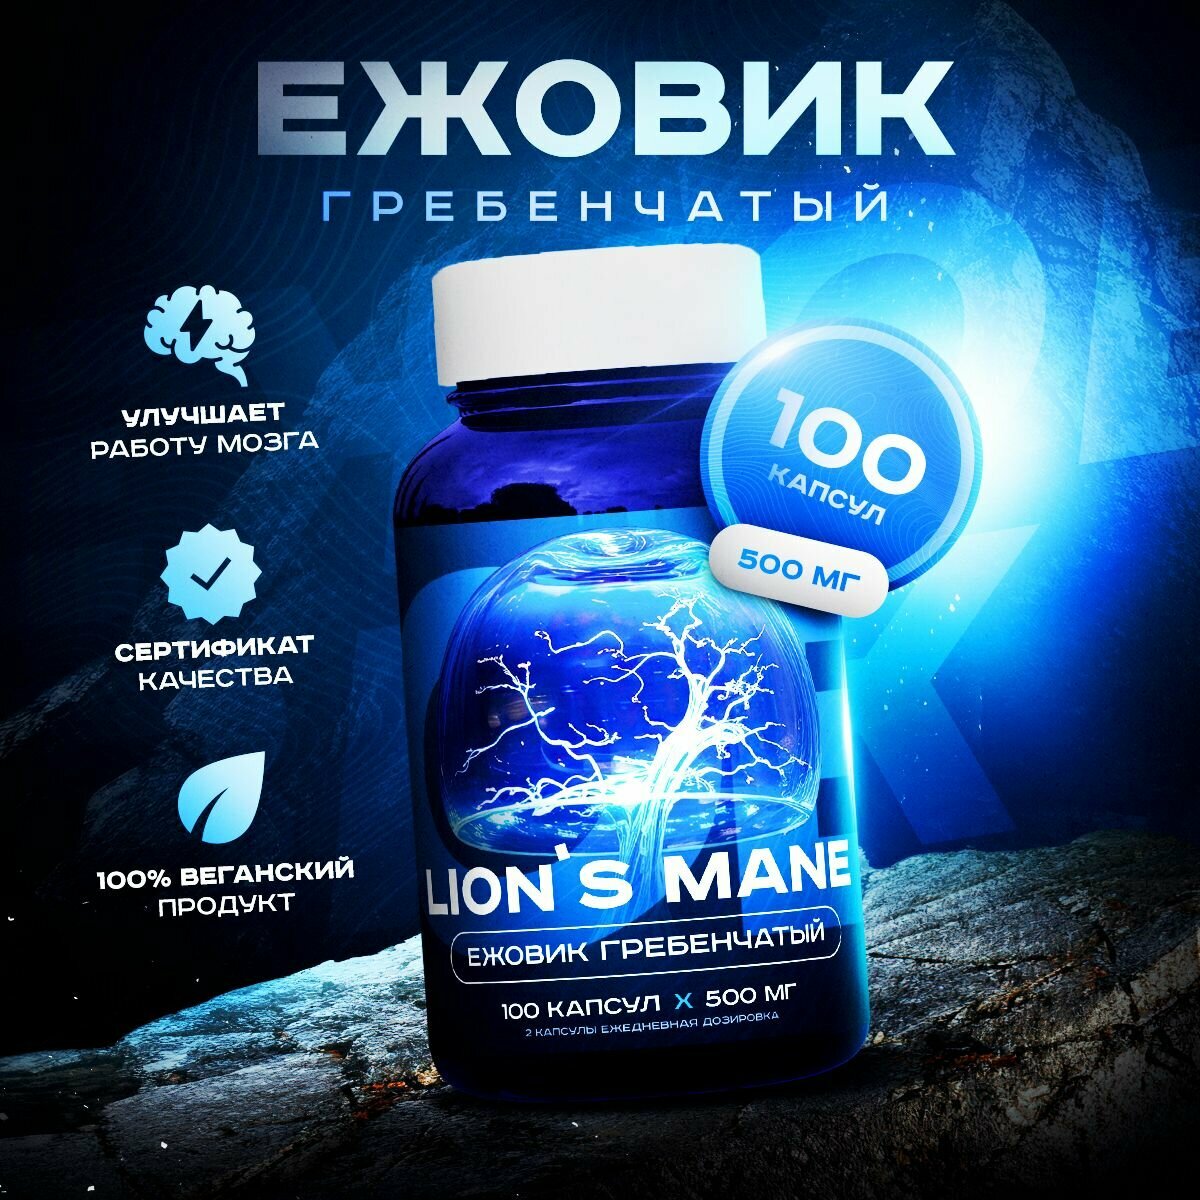 Ежовик гребенчатый, мицелий, Lion's mane, 100 капсул 500 мг